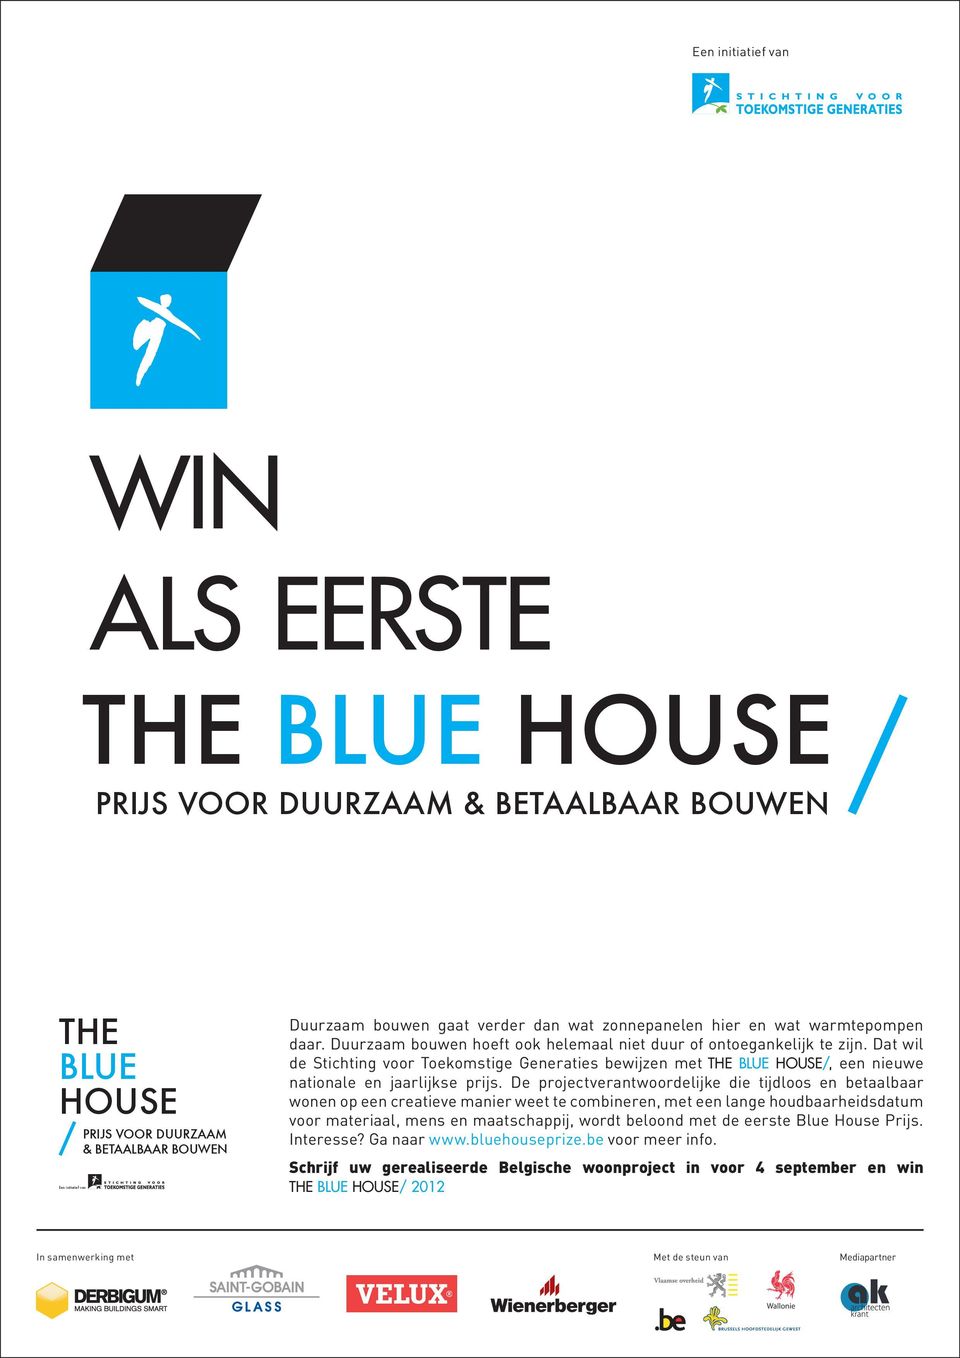 Dat wil de Stichting voor Toekomstige Generaties bewijzen met THE BLUE HOUSE/, een nieuwe nationale en jaarlijkse prijs.